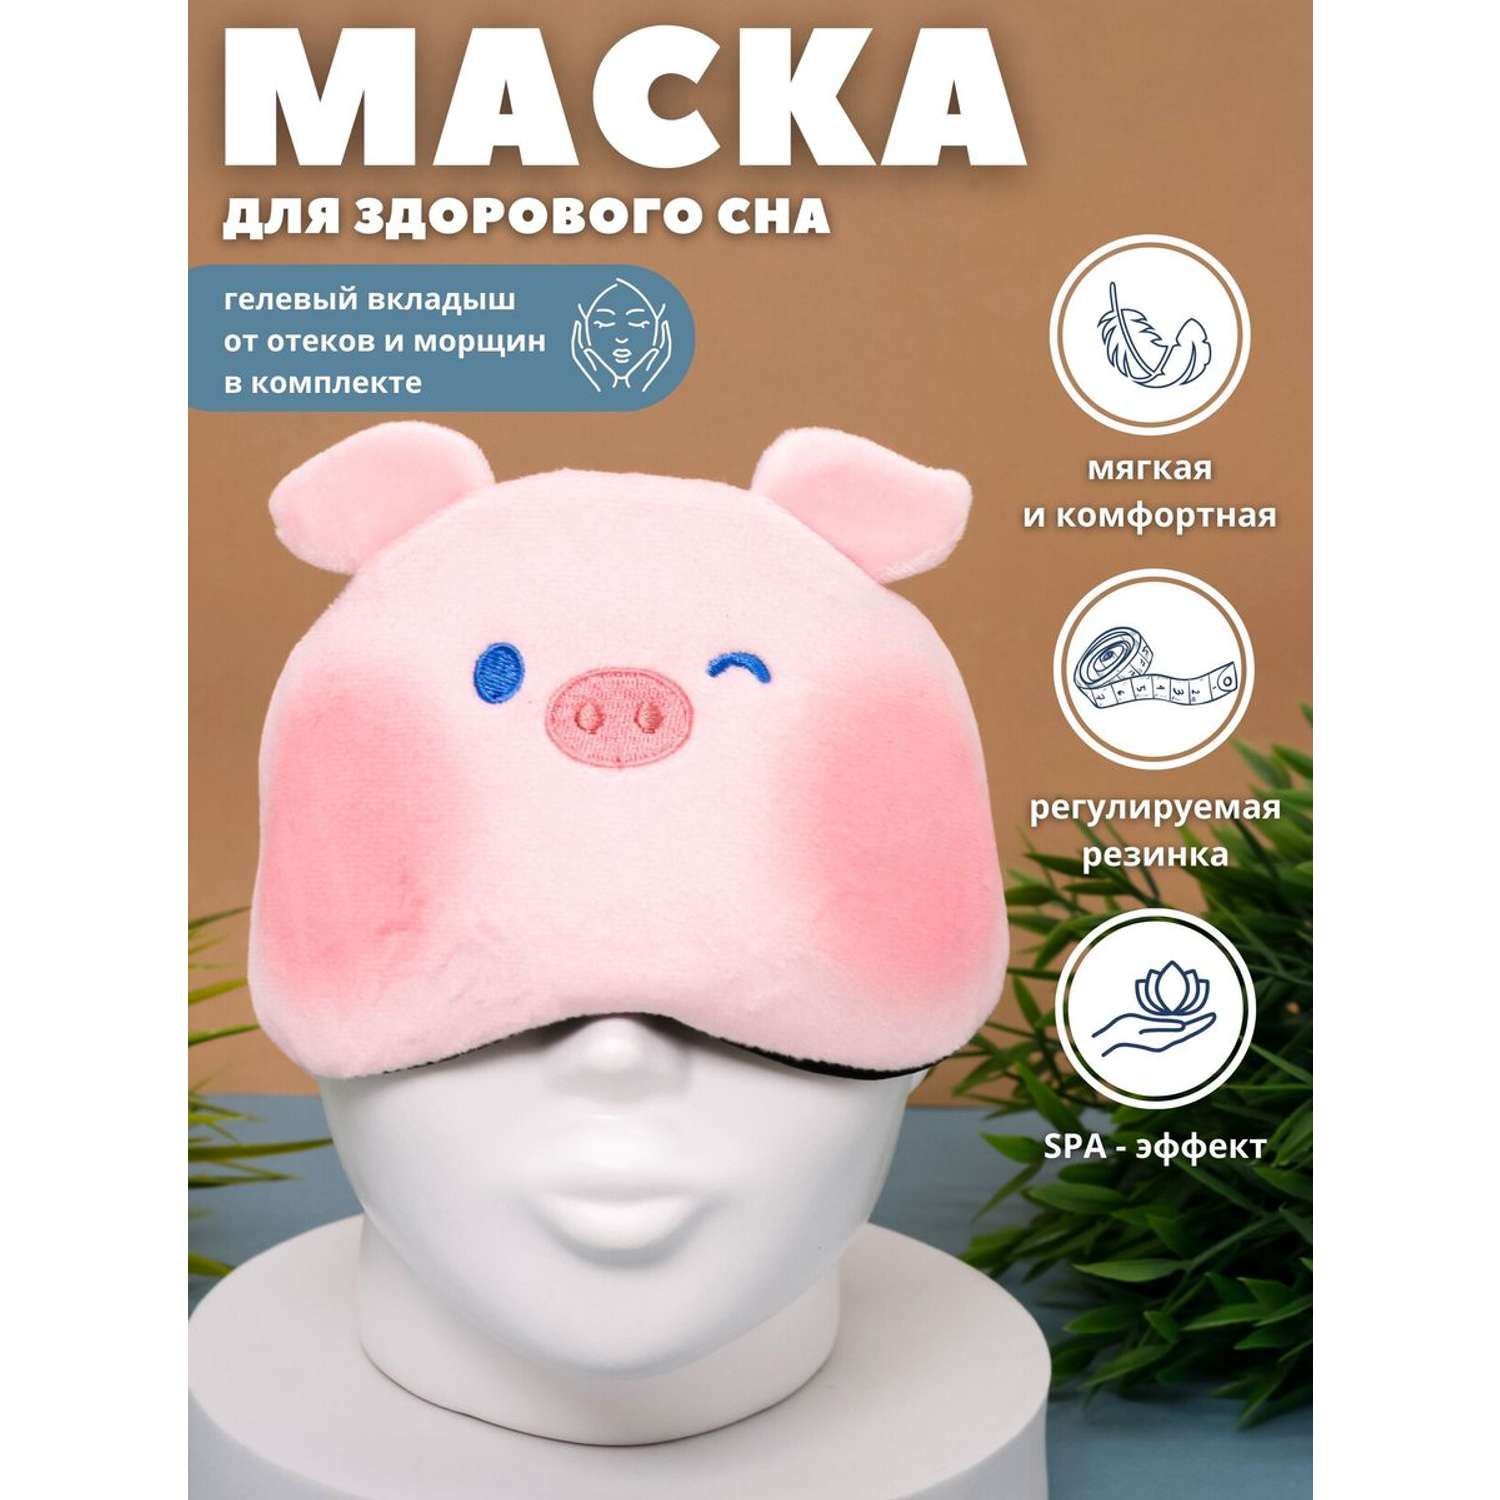 Маска для сна iLikeGift Animal pig pink с гелевым вкладышем - фото 1